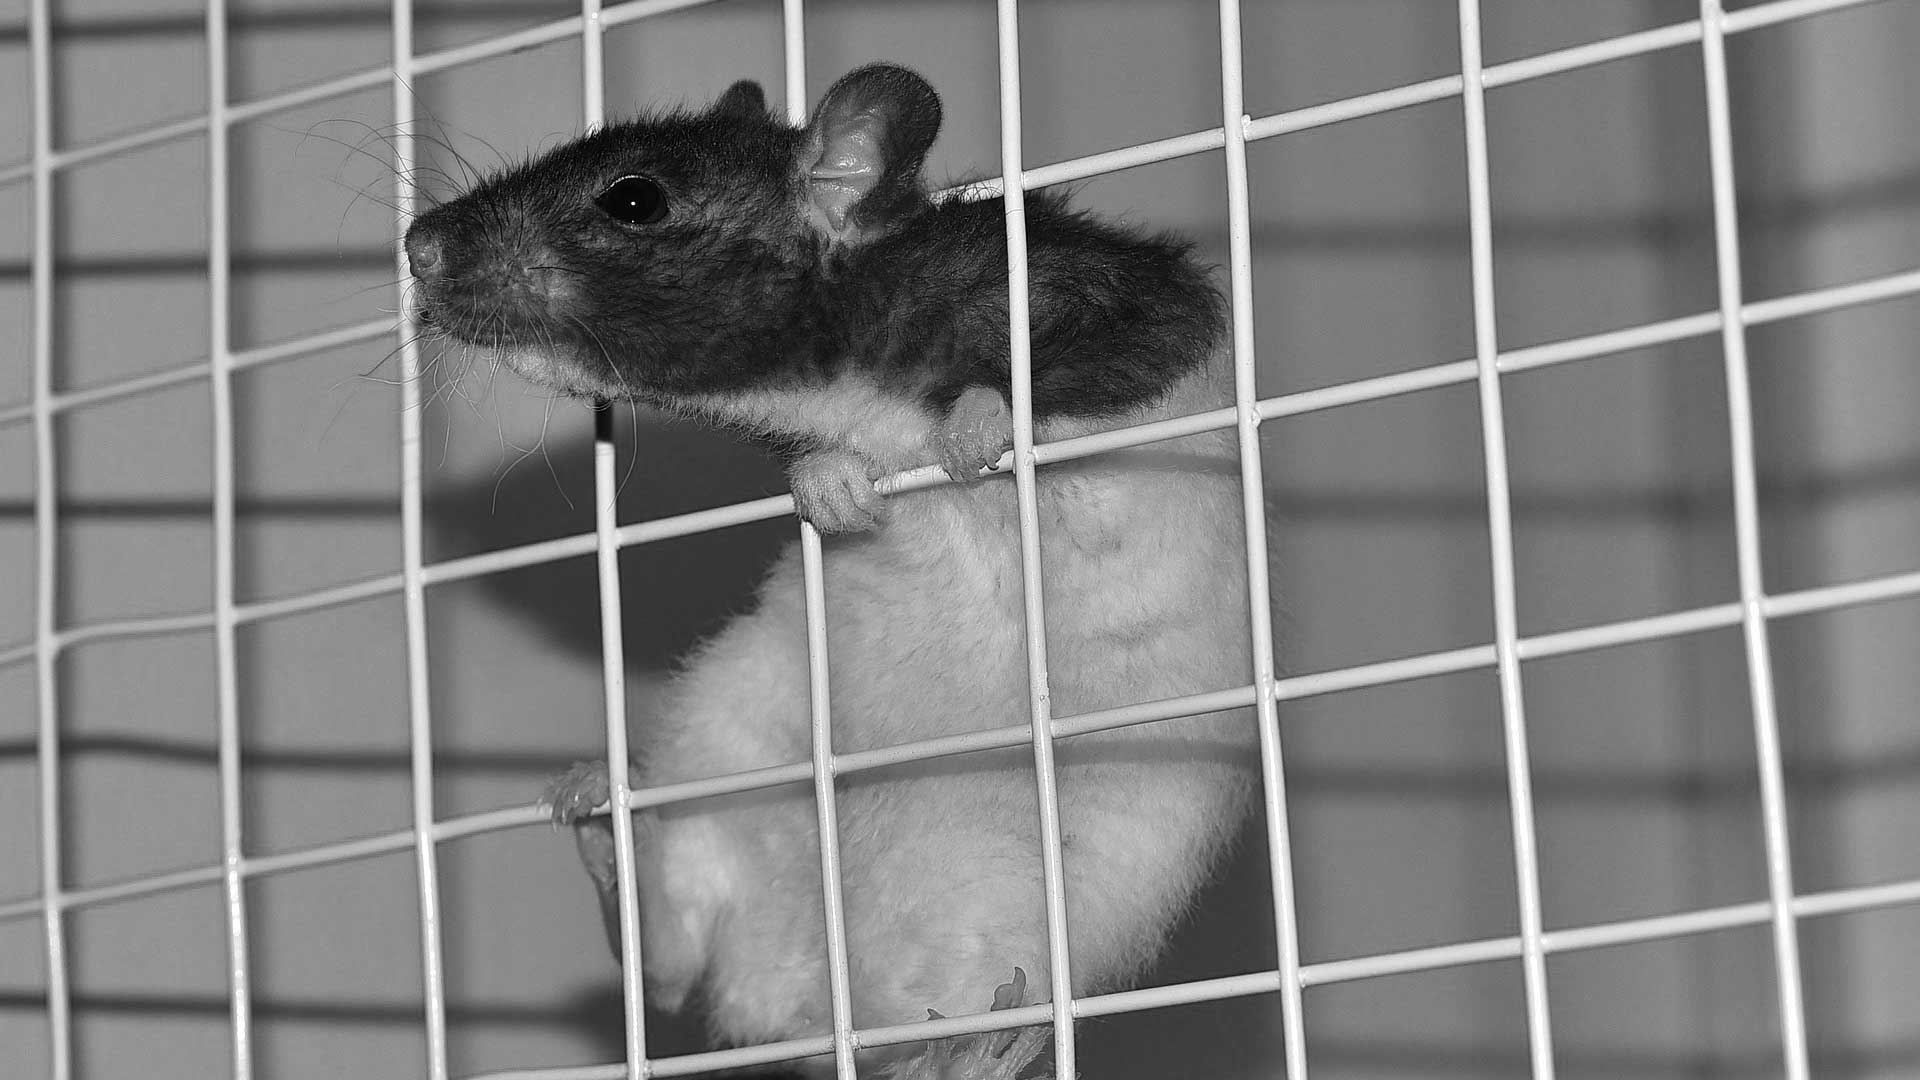 Lire la suite à propos de l’article Expérimentation animale. Trop peu d’engagement